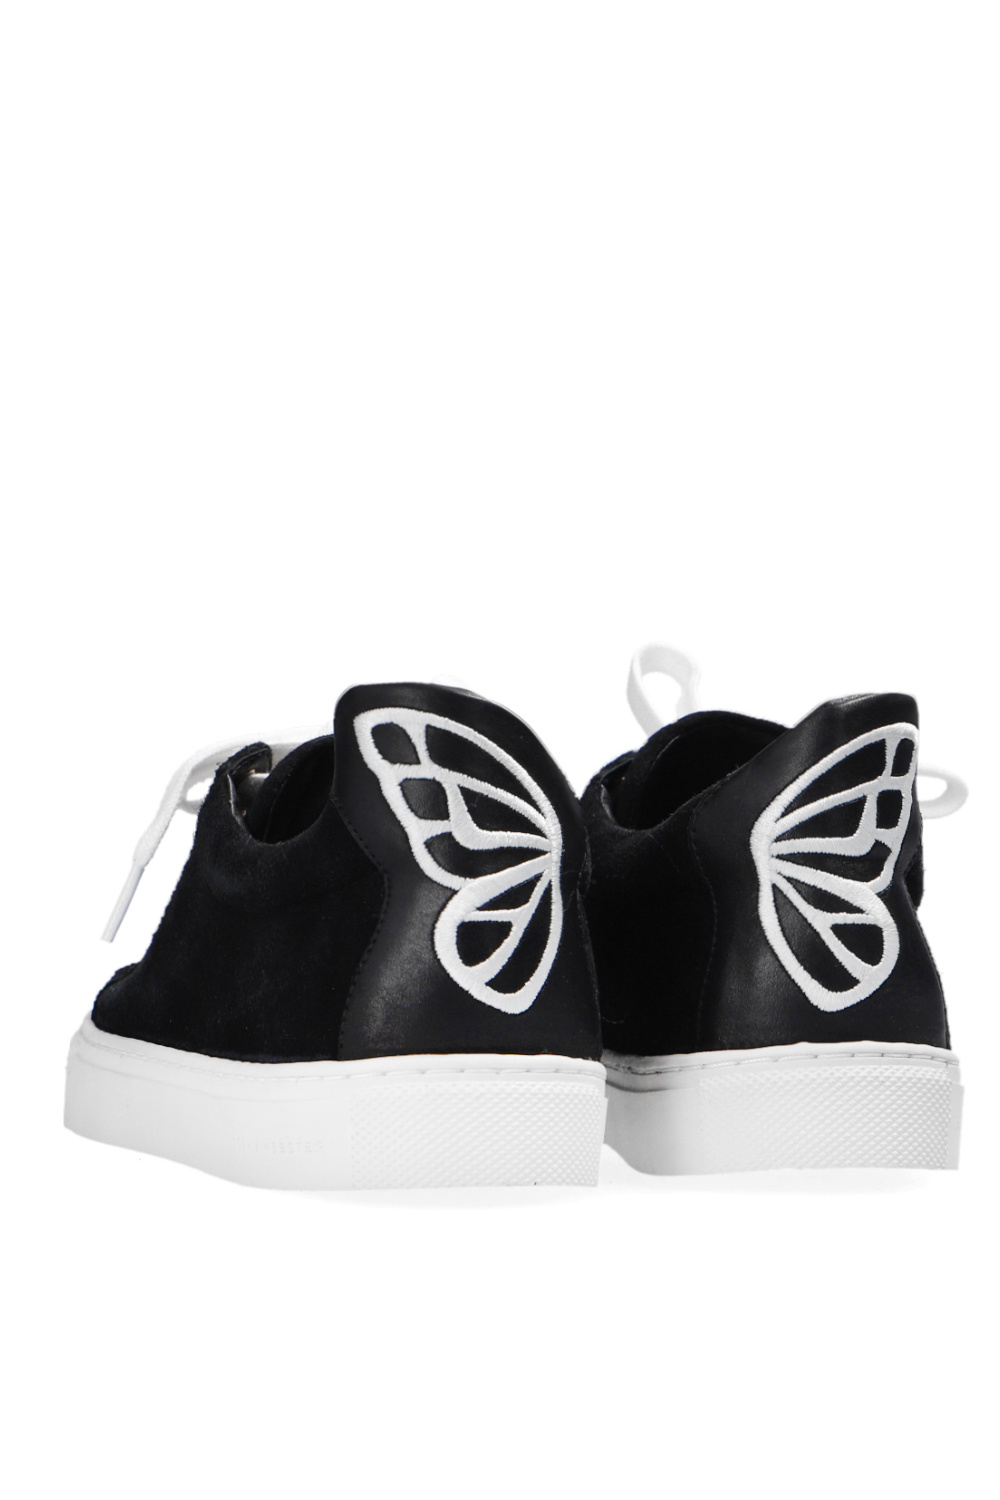 Sophia Webster ‘Butterfly’ sneakers